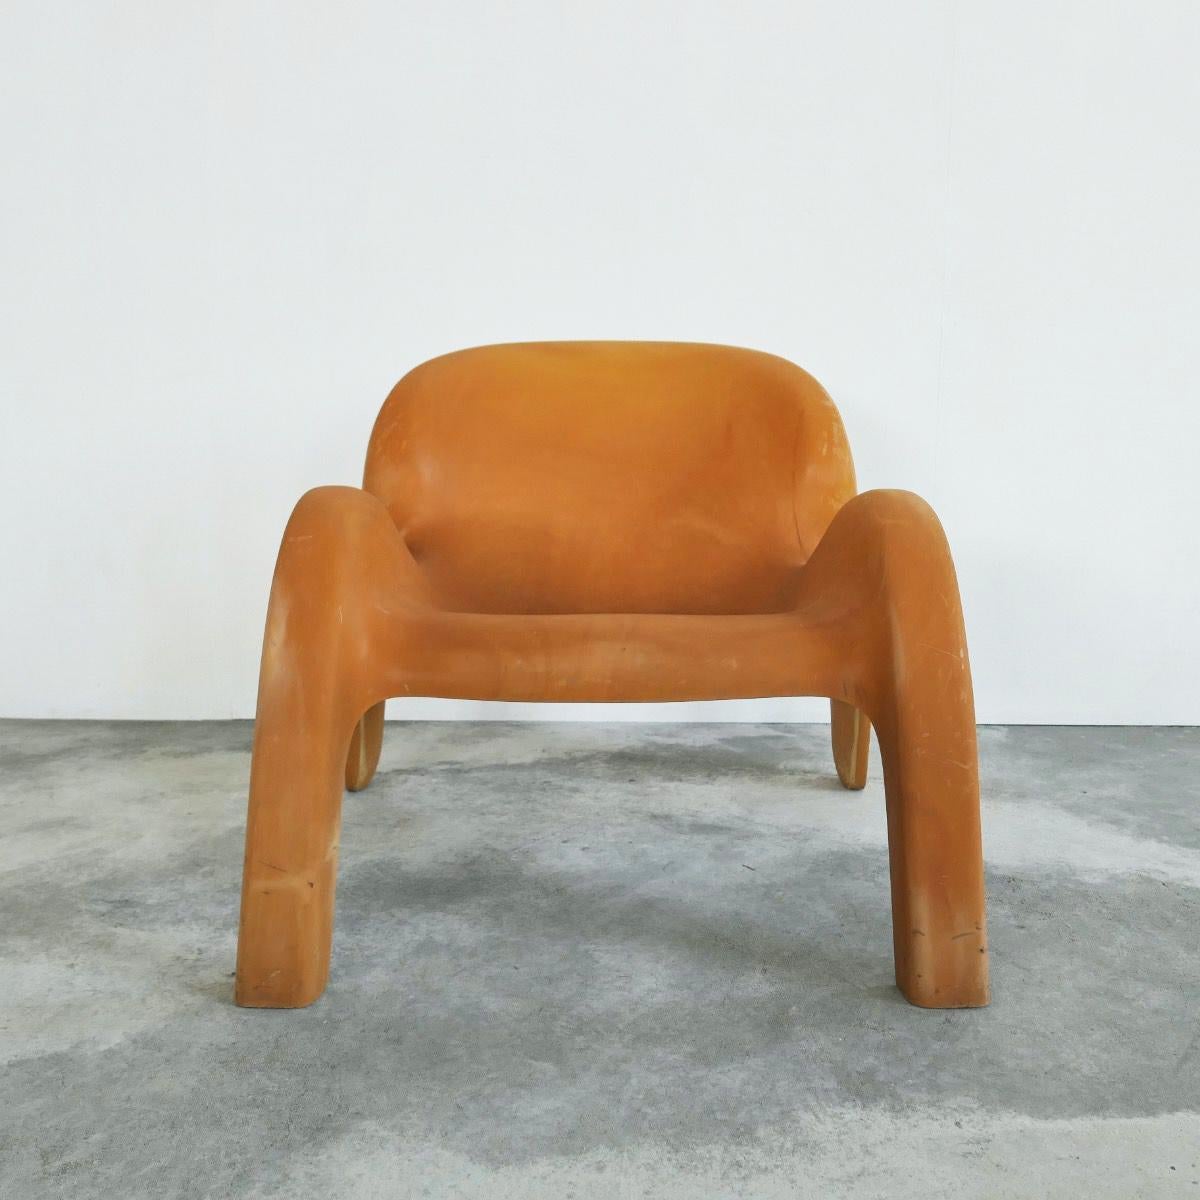 Chaise de salon vintage jaune ocre Peter Ghyczy GN2. Fin du 20e siècle.

Magnifique chaise longue au design vintage par Peter Ghyczy. Un grand design de l'ère spatiale en polyuréthane moulé, pour l'extérieur et l'intérieur.

La couleur orange